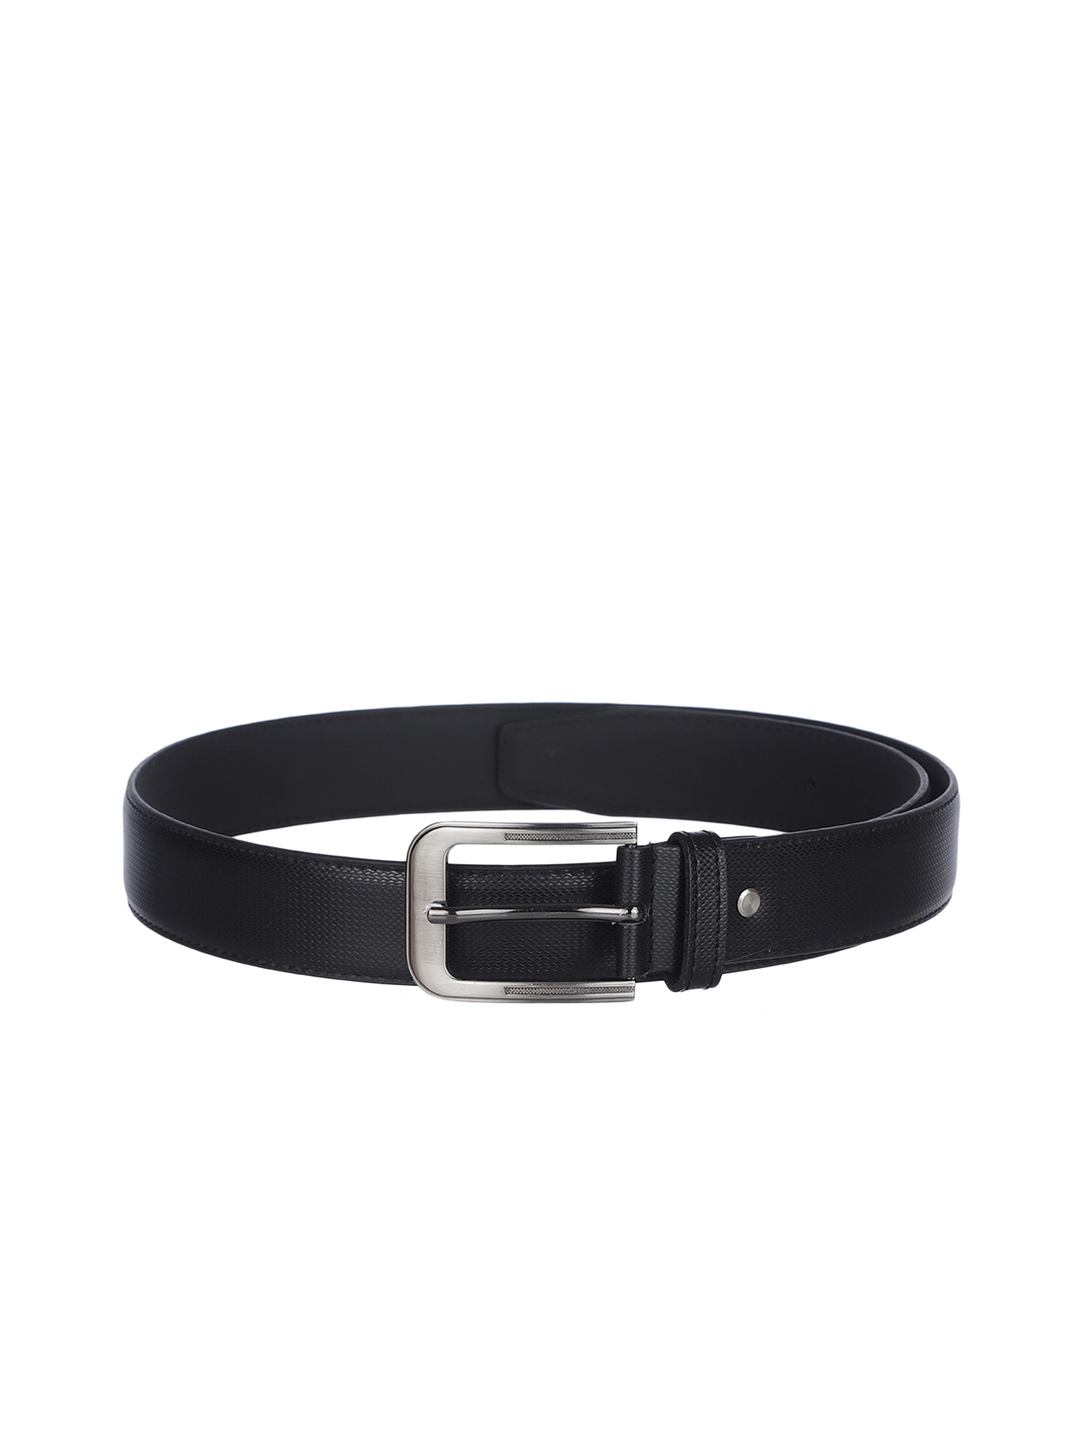 Buy Kara Men Black Textured Leather Belt - Belts for Men 10850224 | Myntra